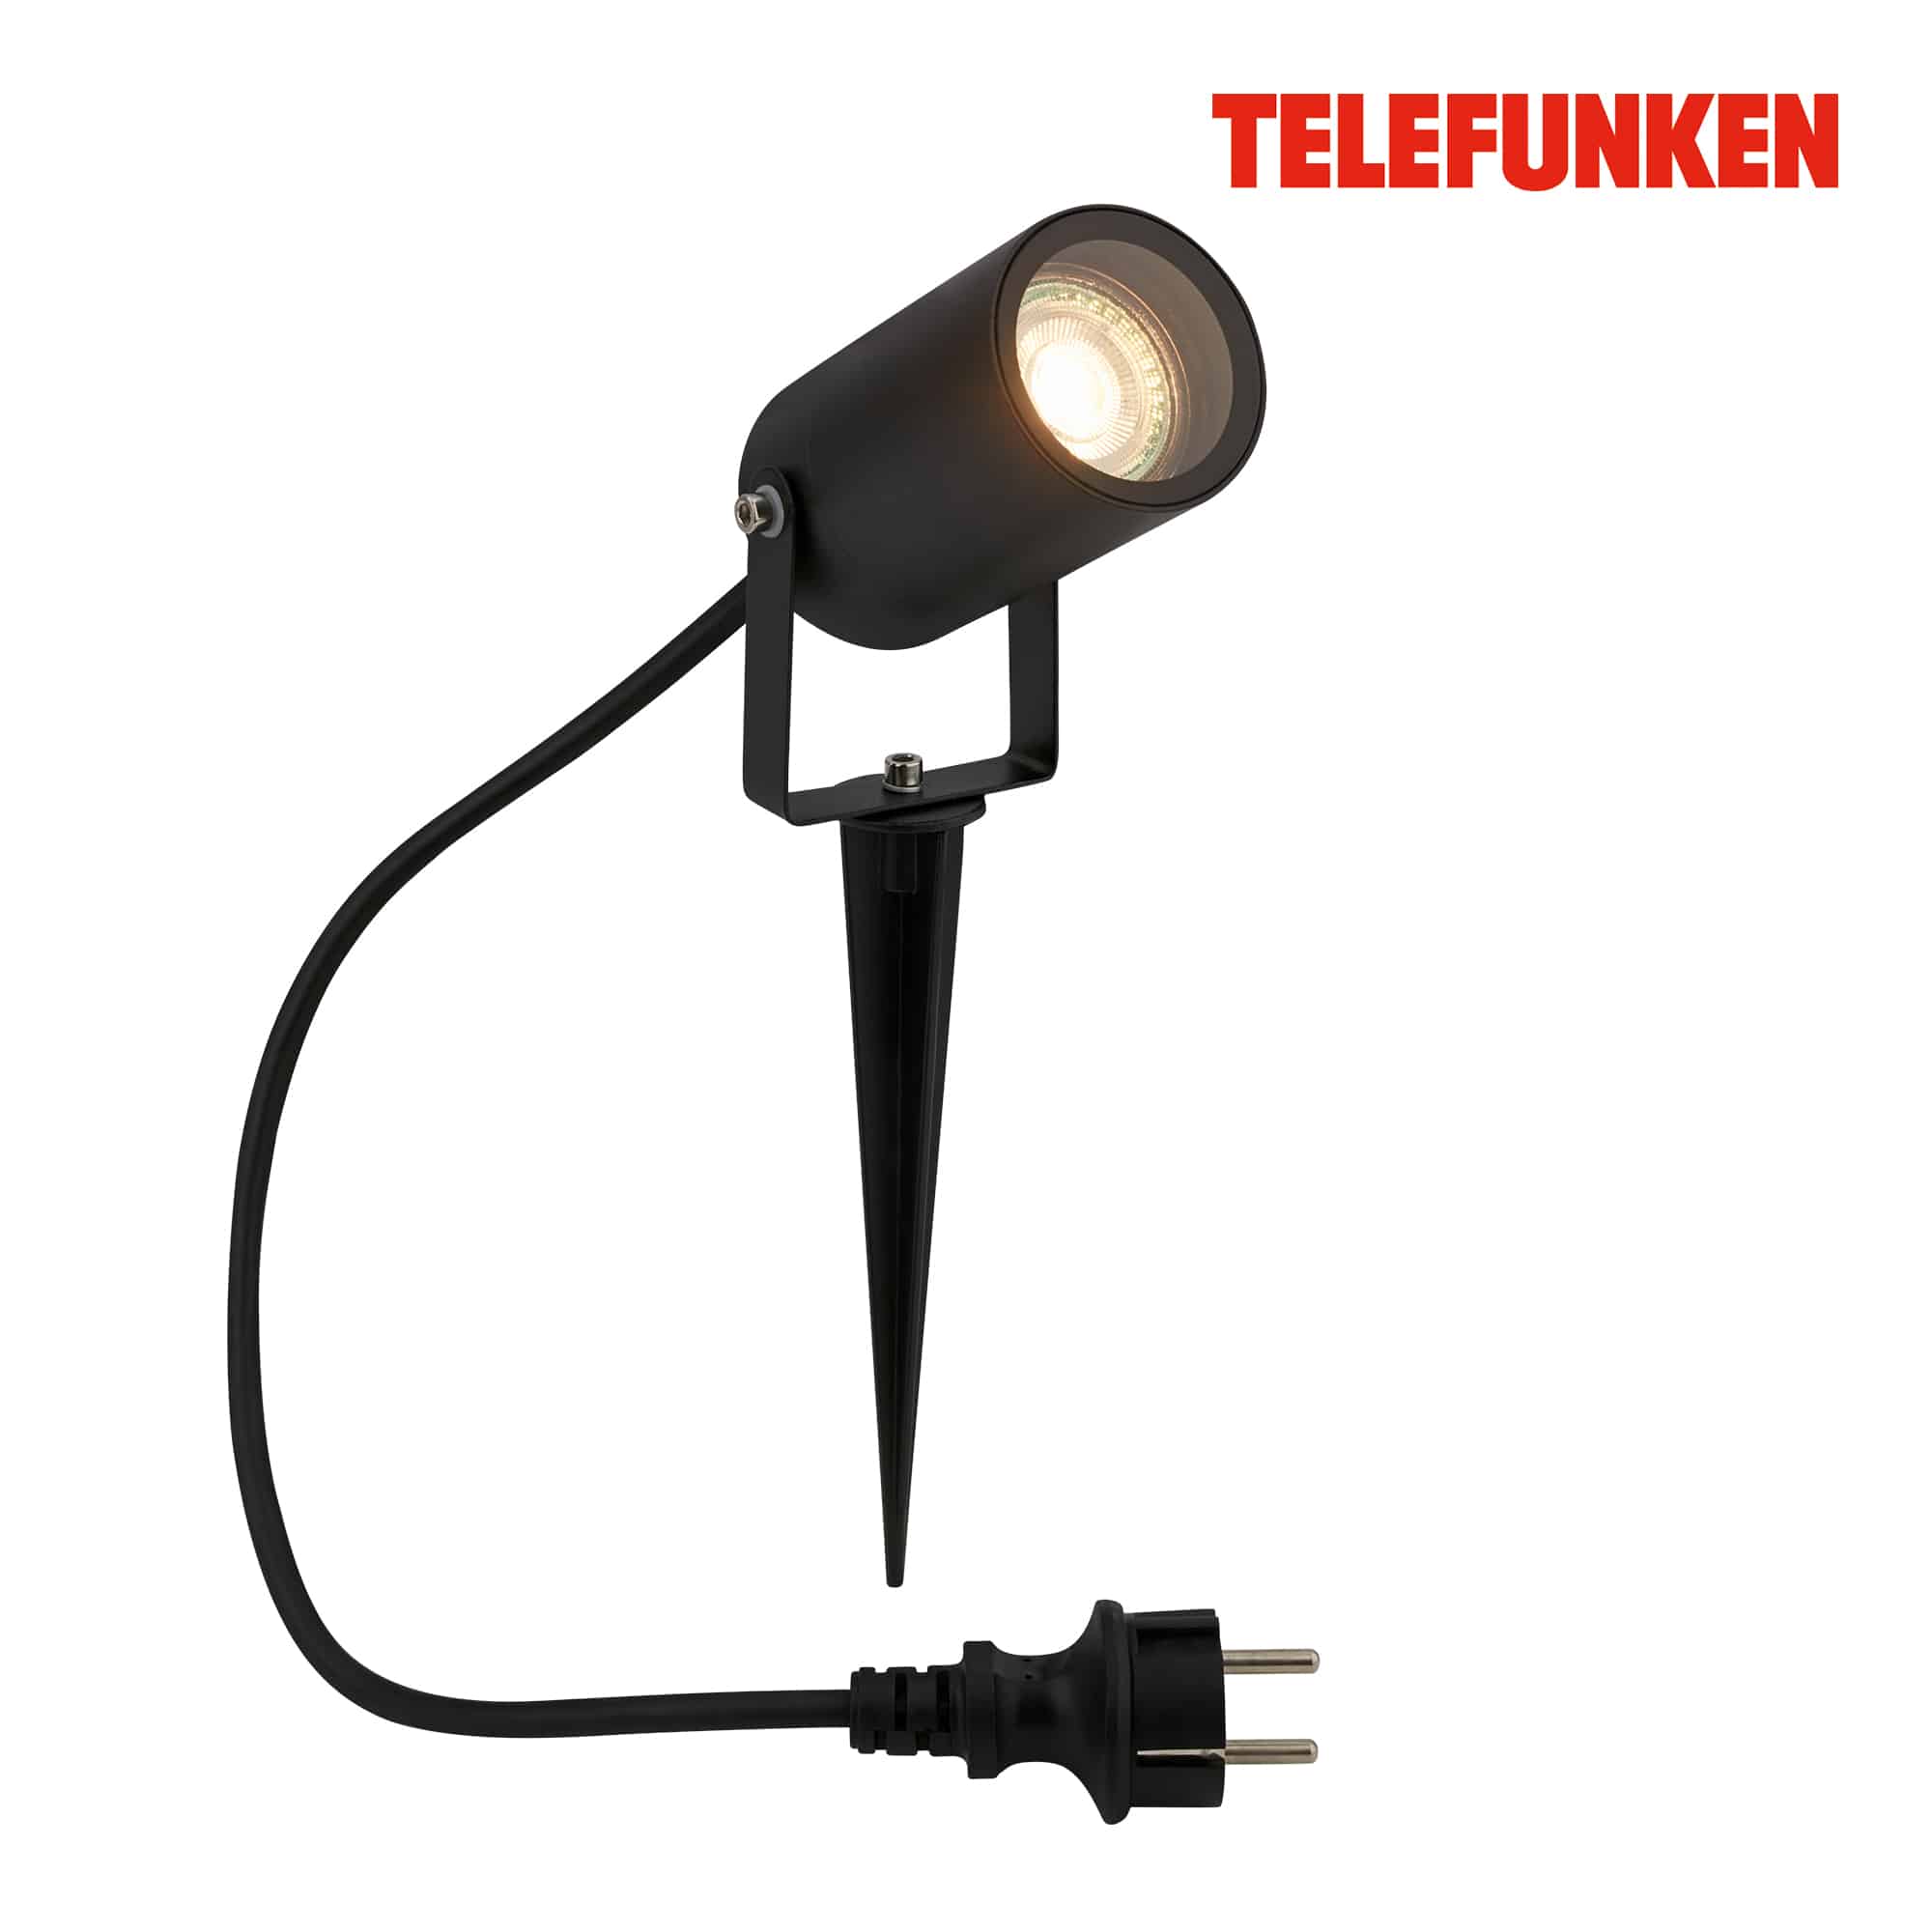 Telefunken LED Projecteur de jardin, protection contre les projections d'eau, orientable